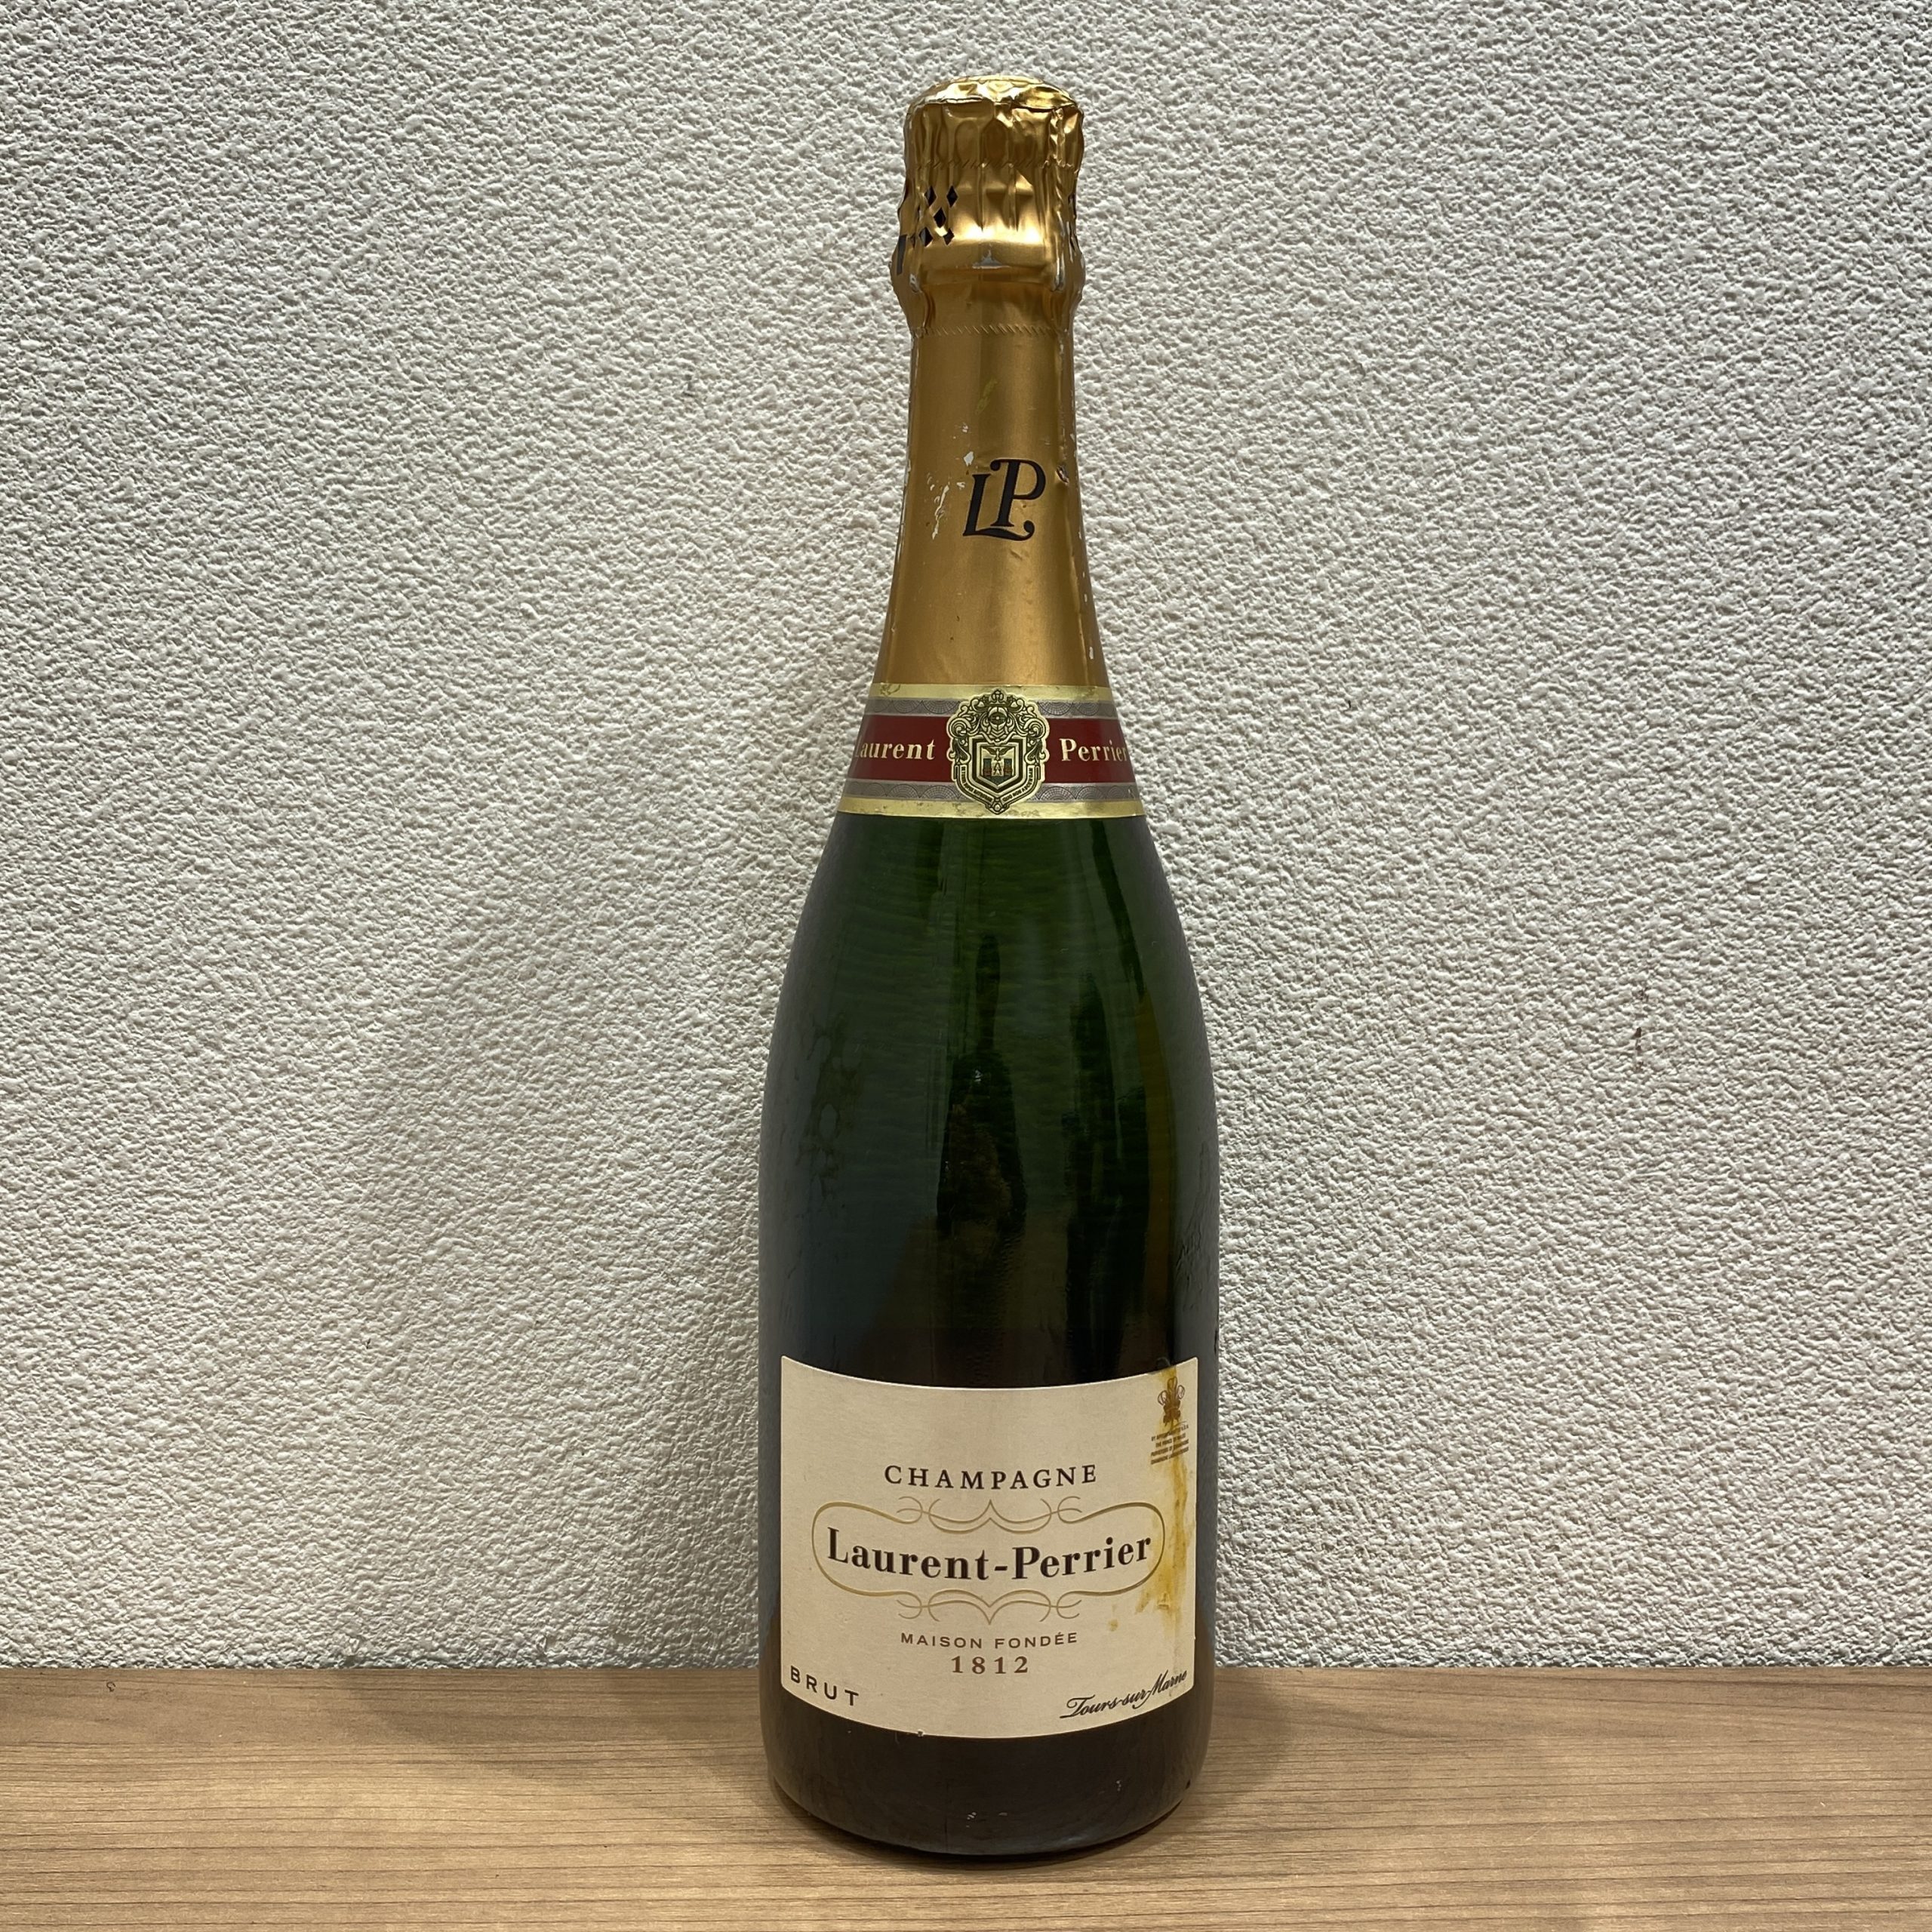 【Laurent-Perrier/ローランペリエ】CHAMPAGNE/シャンパン BRUT/ブリュット 1812 12% 750ml